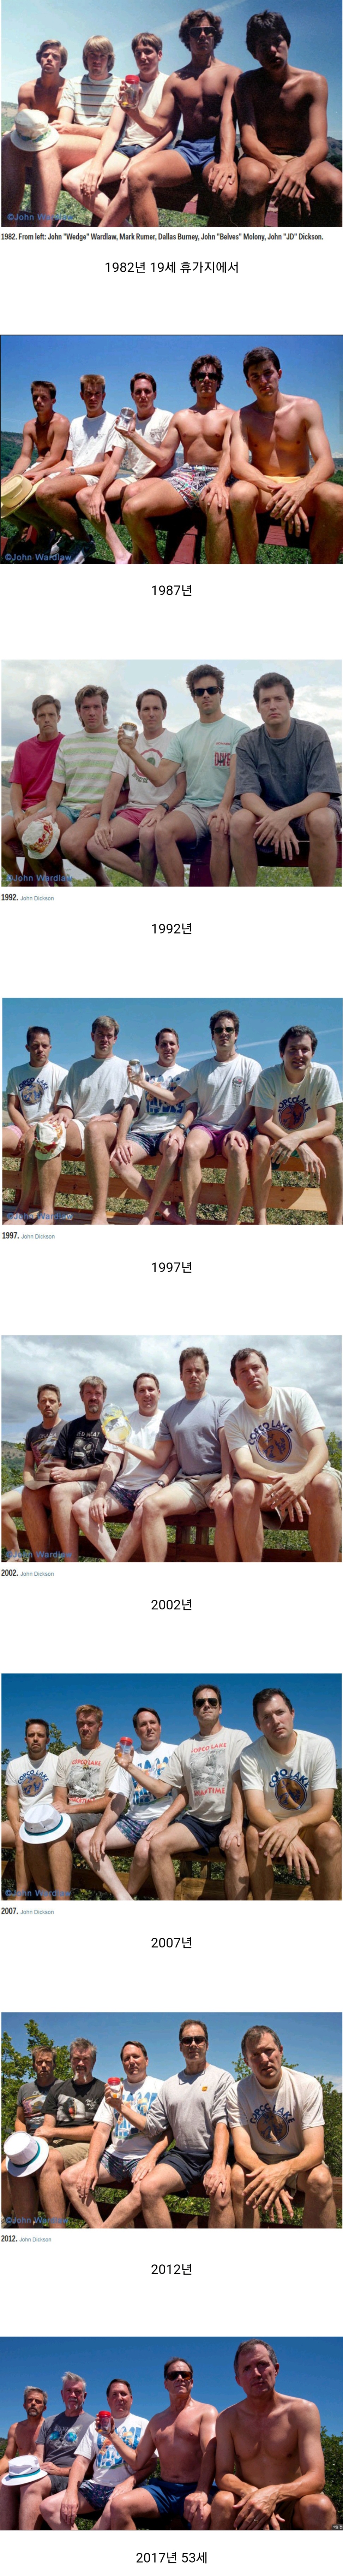 다섯친구가 5년마다 35년간 찍은 사진